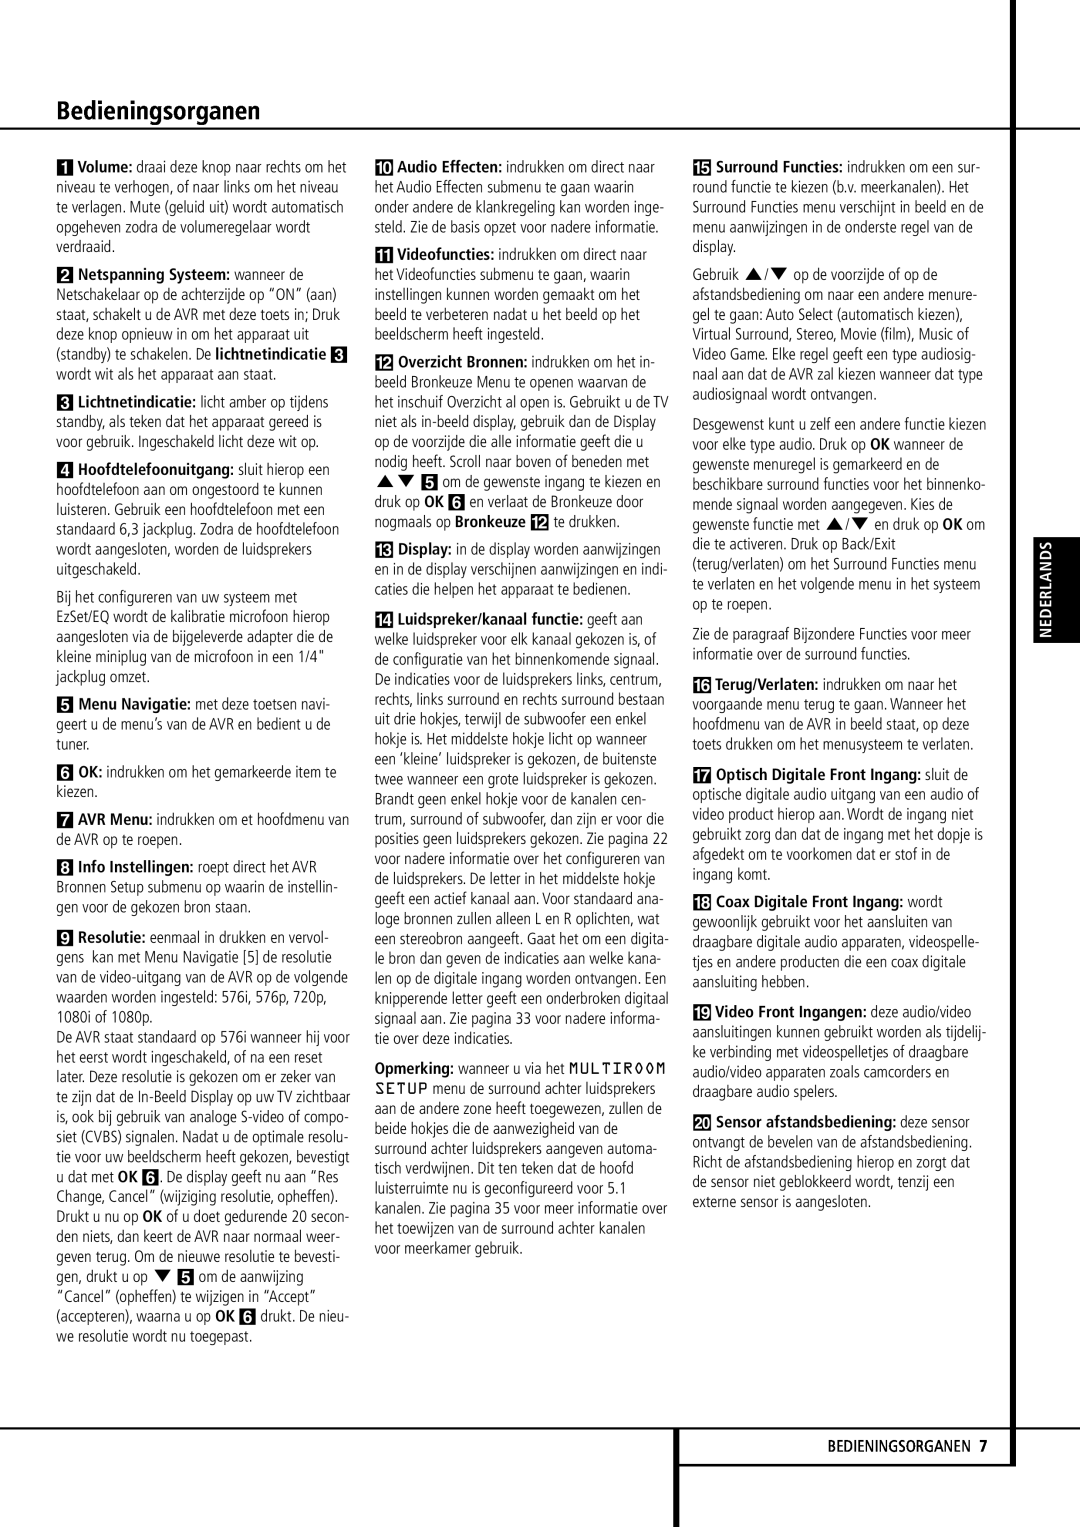 Harman-Kardon 355, 255 manual Bedieningsorganen, 6OK indrukken om het gemarkeerde item te kiezen, Nederlands 